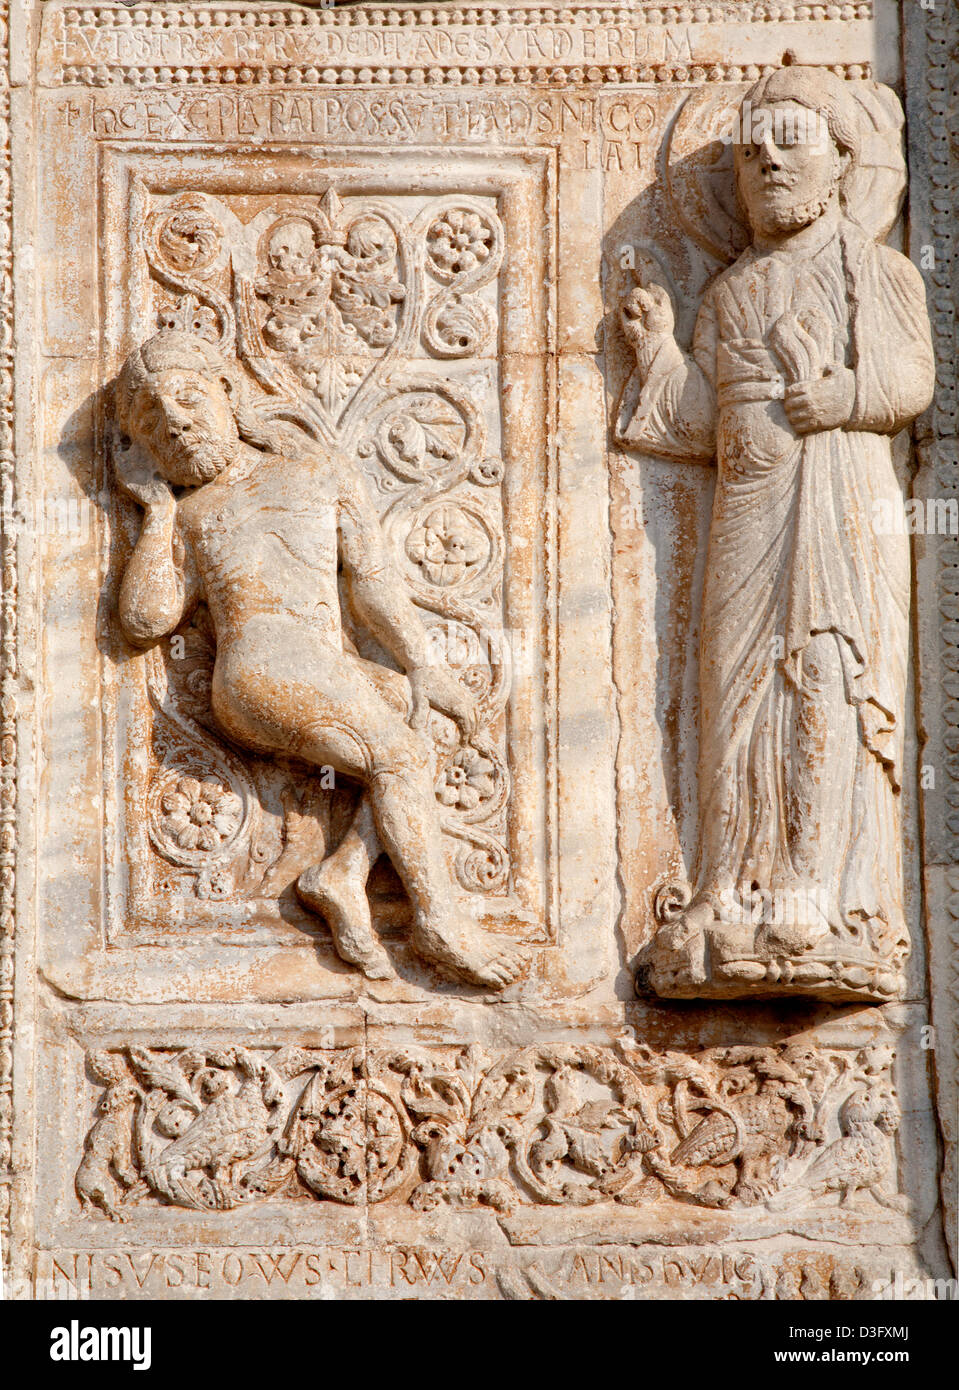 VERONA - gennaio 27: rilievo della creazione di Adamo dalla basilica romanica di San Zeno. Foto Stock